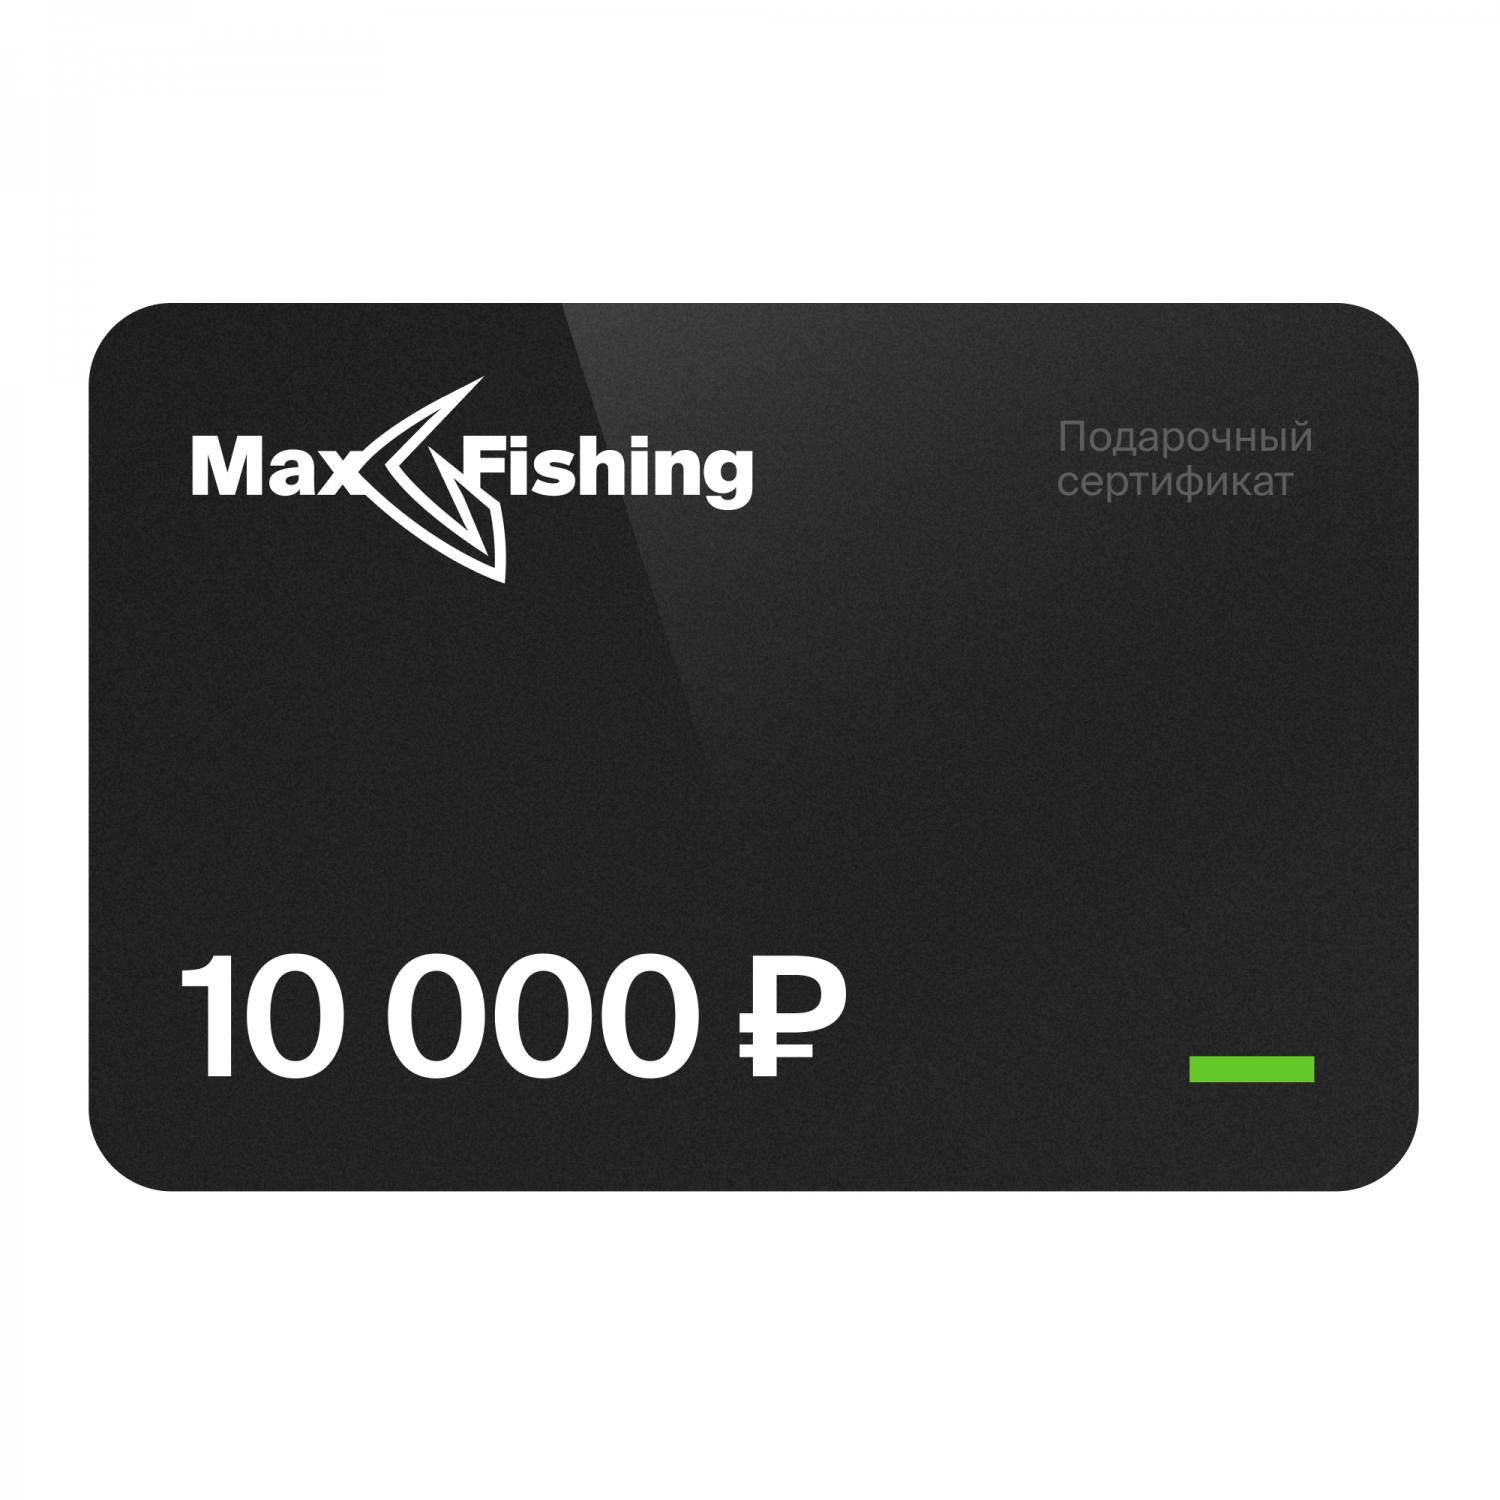 Подарочный сертификат MaxFishing 10 000 ₽ подарочный сертификат maxfishing 20